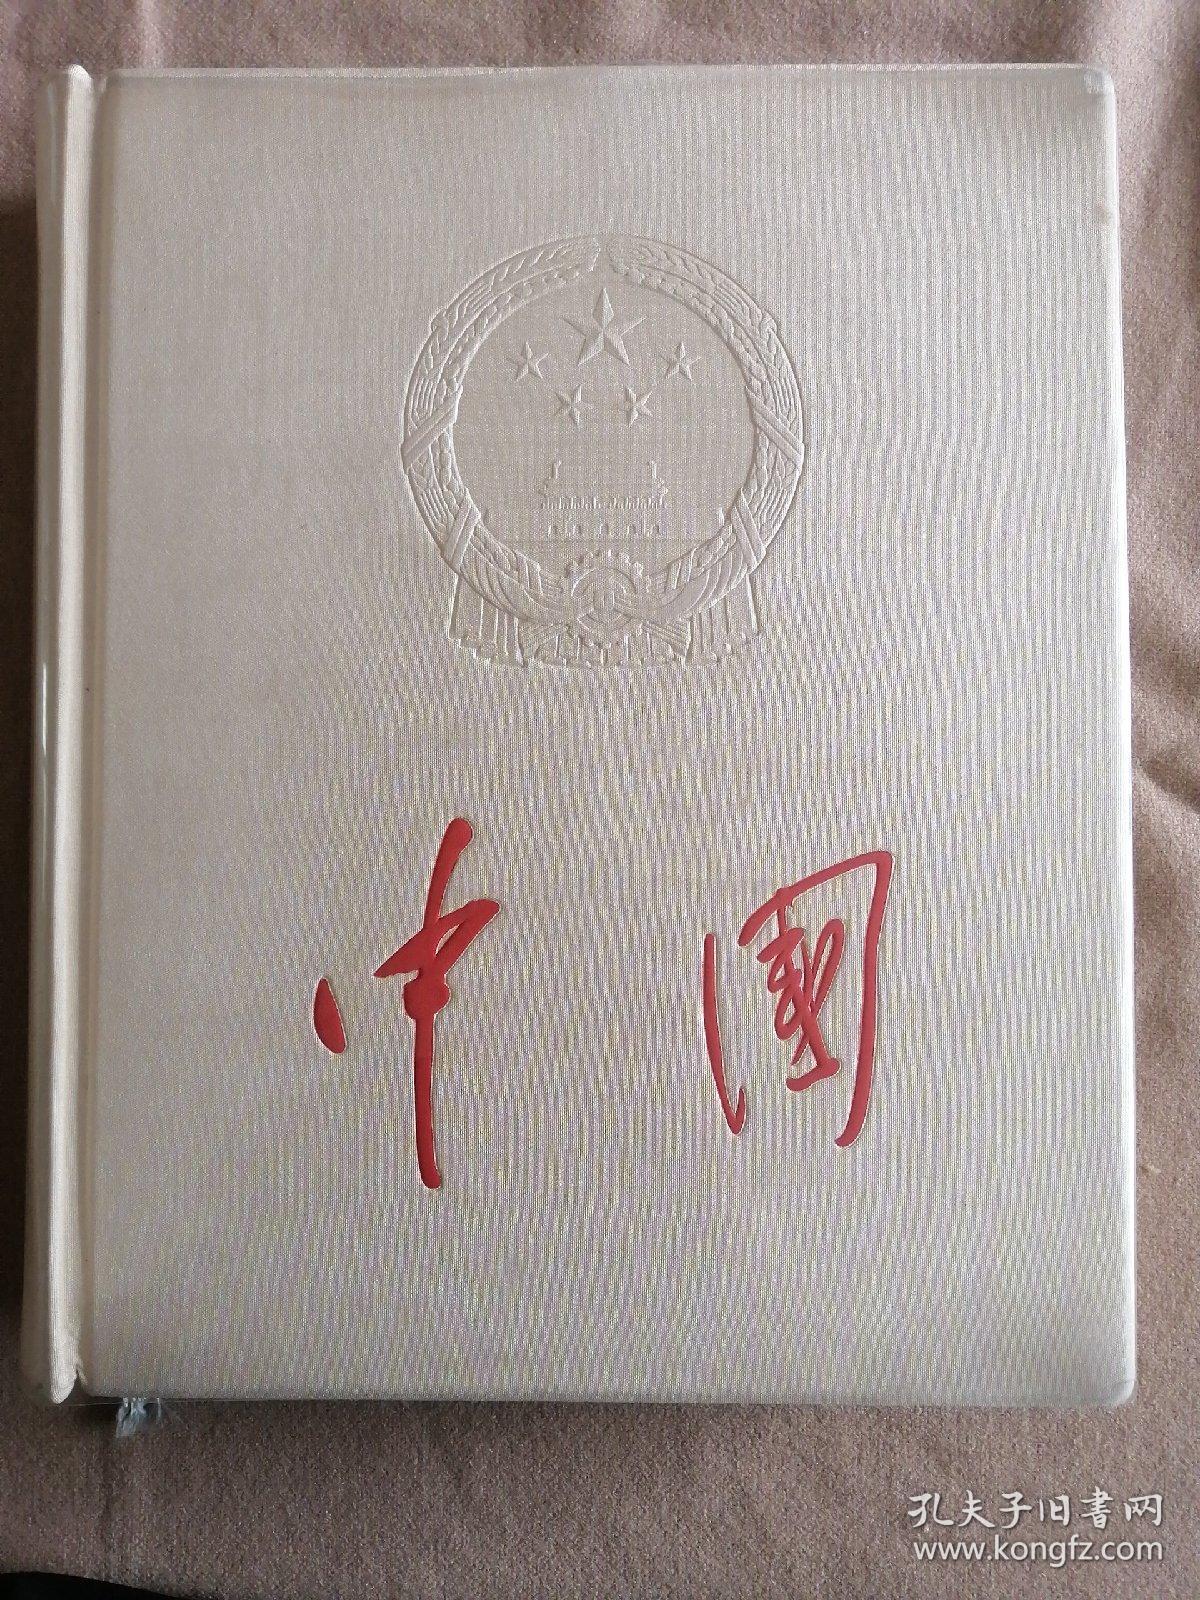 1959年版中国大画册